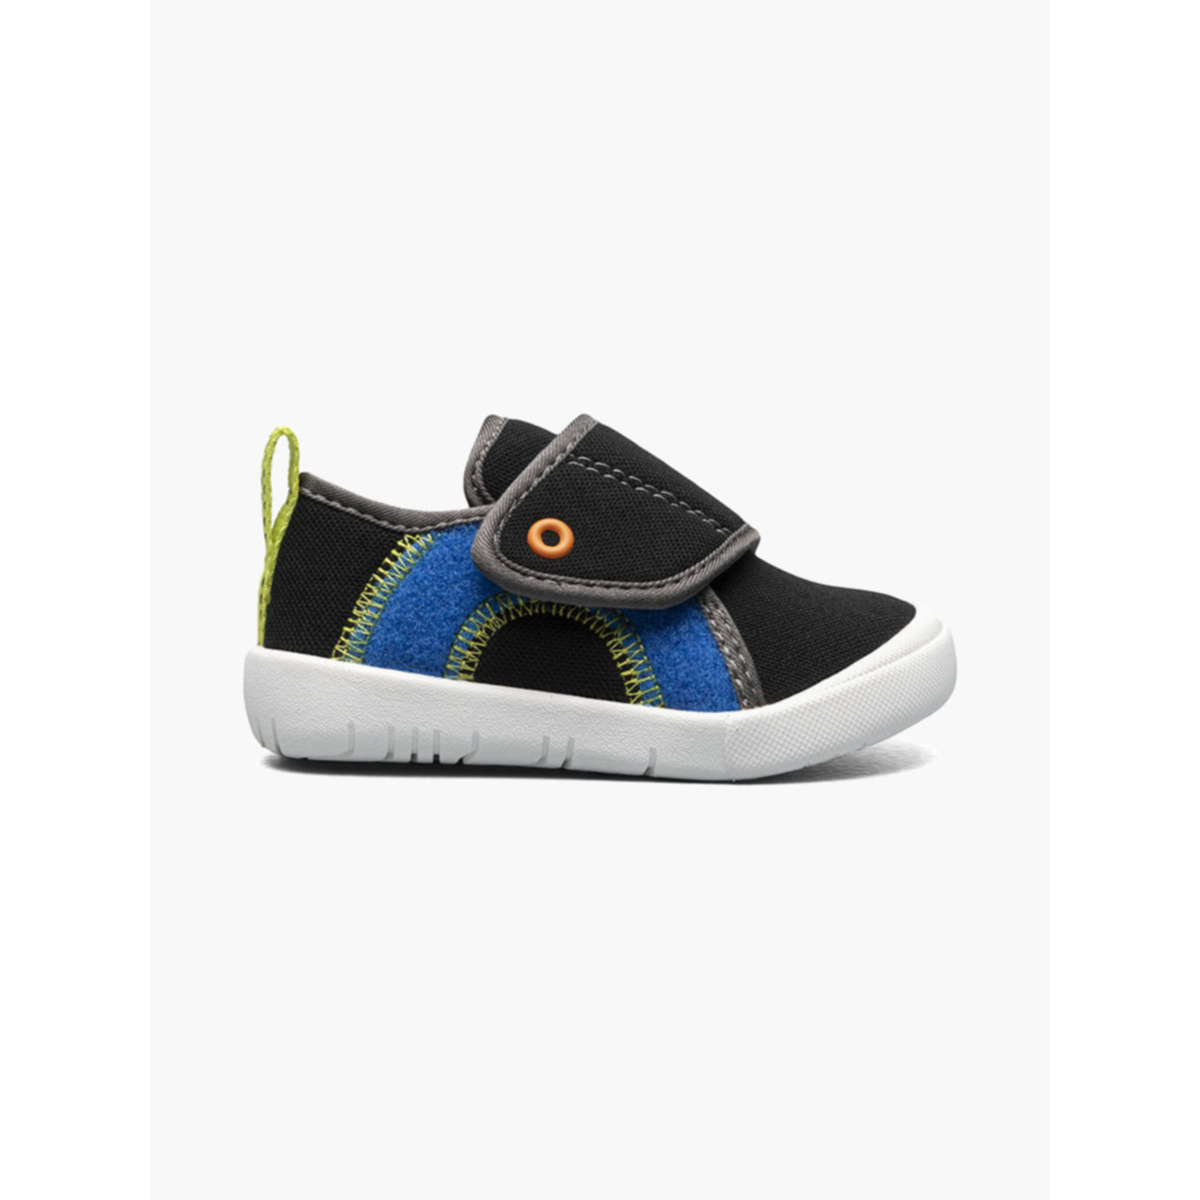 BOGS Unisex Baby Kicker Hook And Loop Shoe Sneaker Black Multi - 72811I-009 1 BLACK MULTI - BLACK MULTI, 9 Little KId